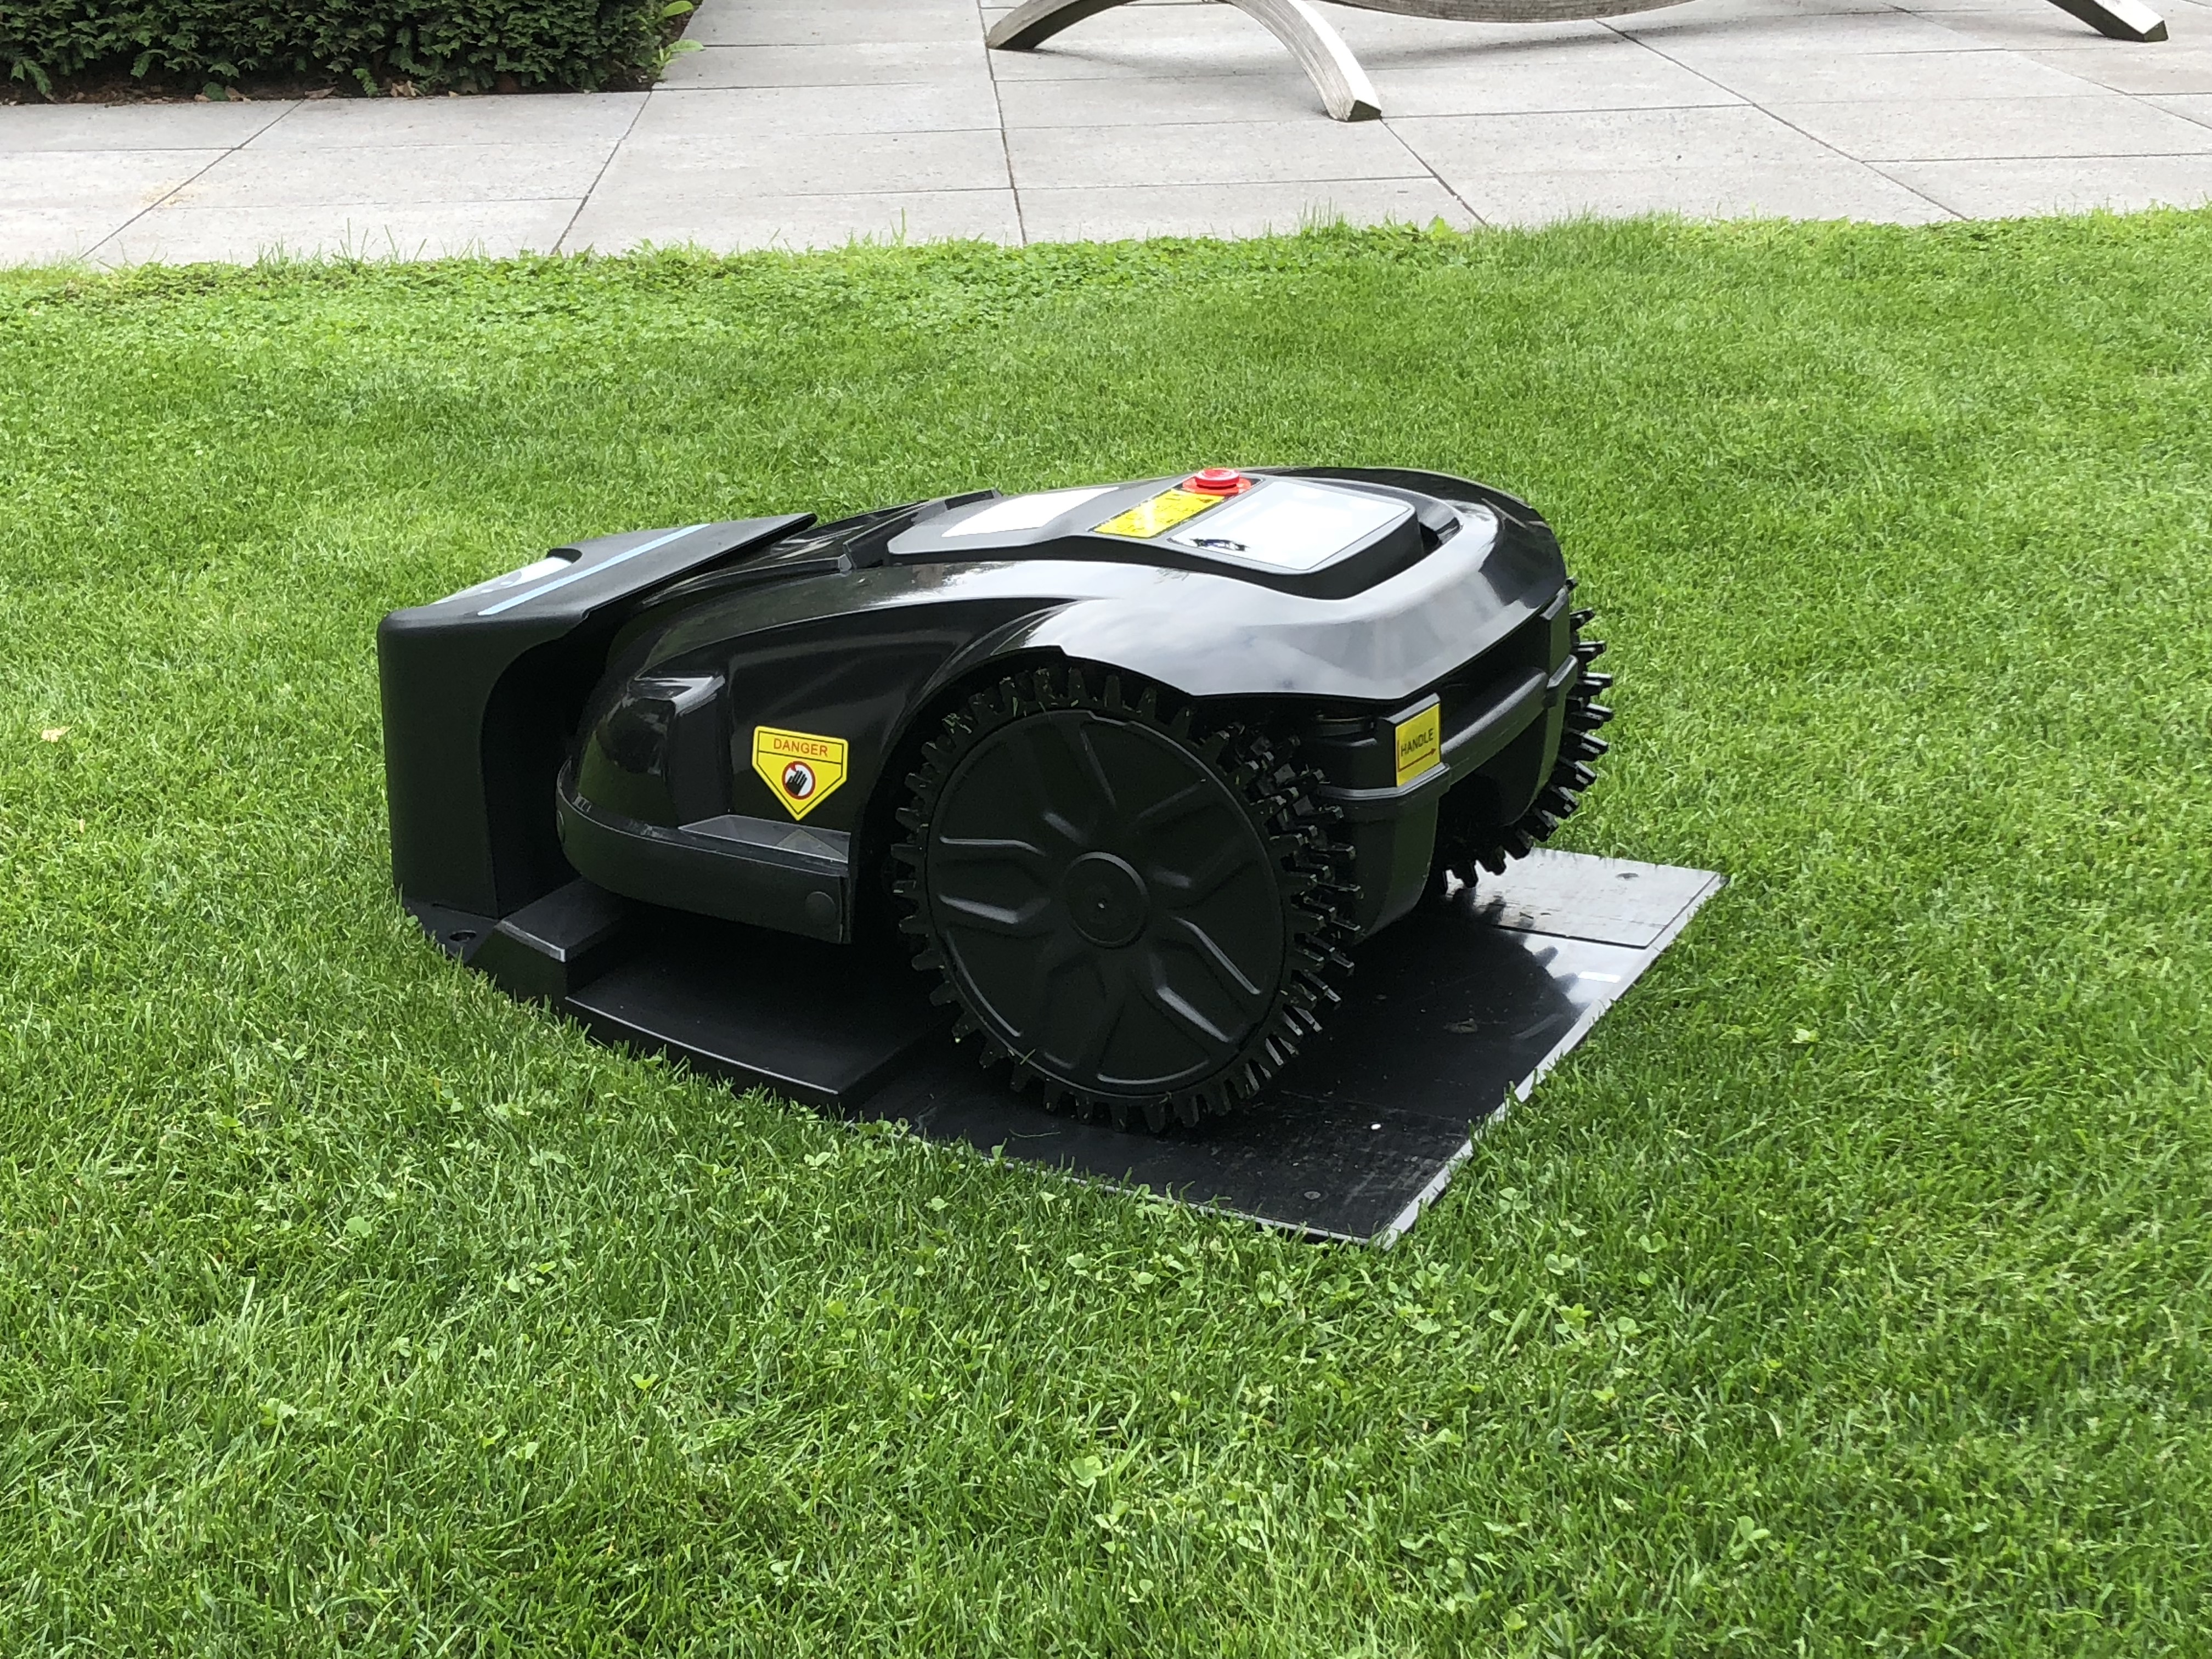 Robotmaaier op nat gras gebruiken: in hoeverre kan dat?